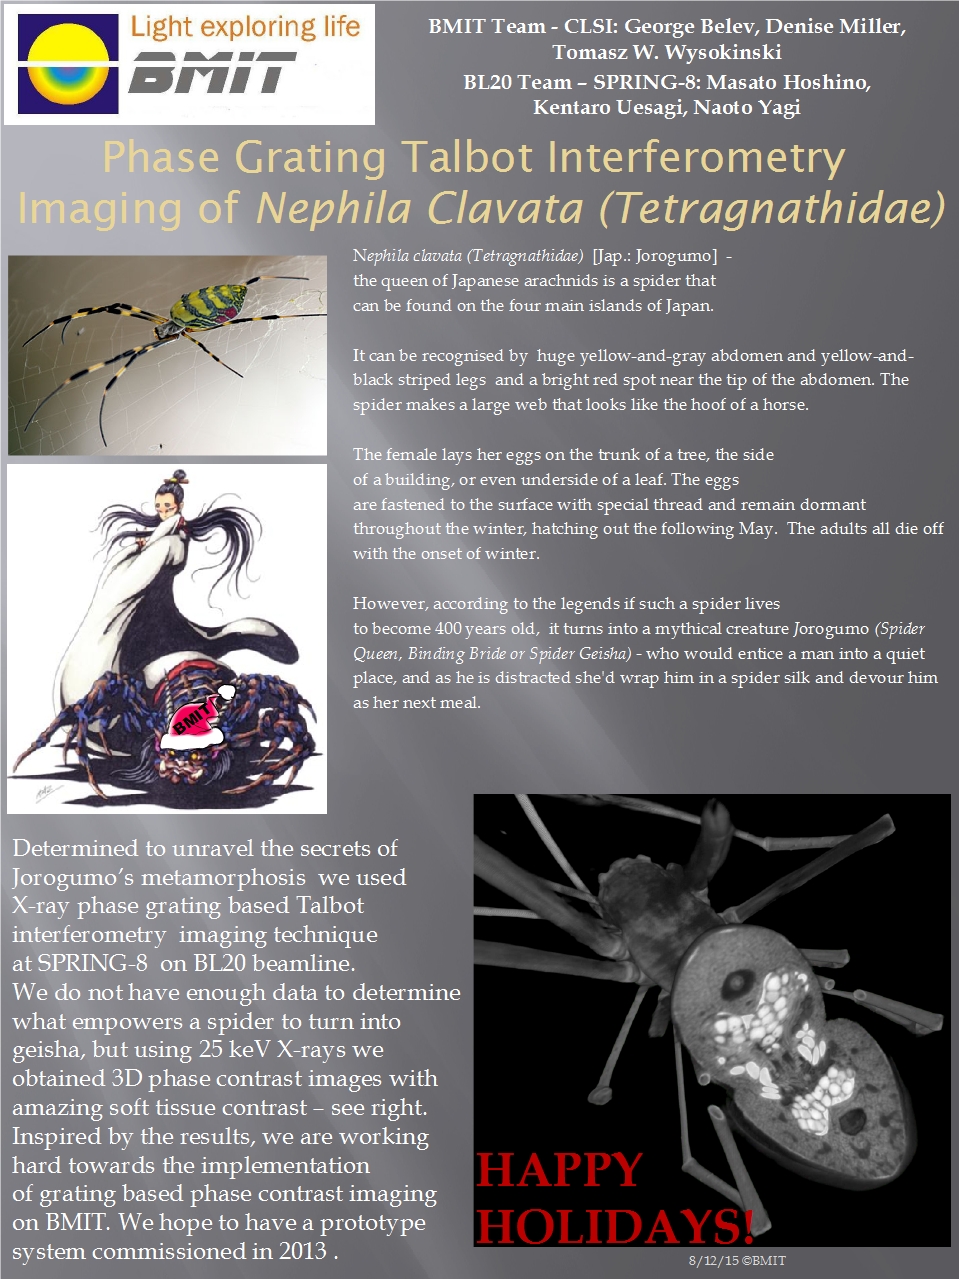 Phase Grating Talbot Interferometry Imaging of Nephila Clavata (Tetragnathidae) Image